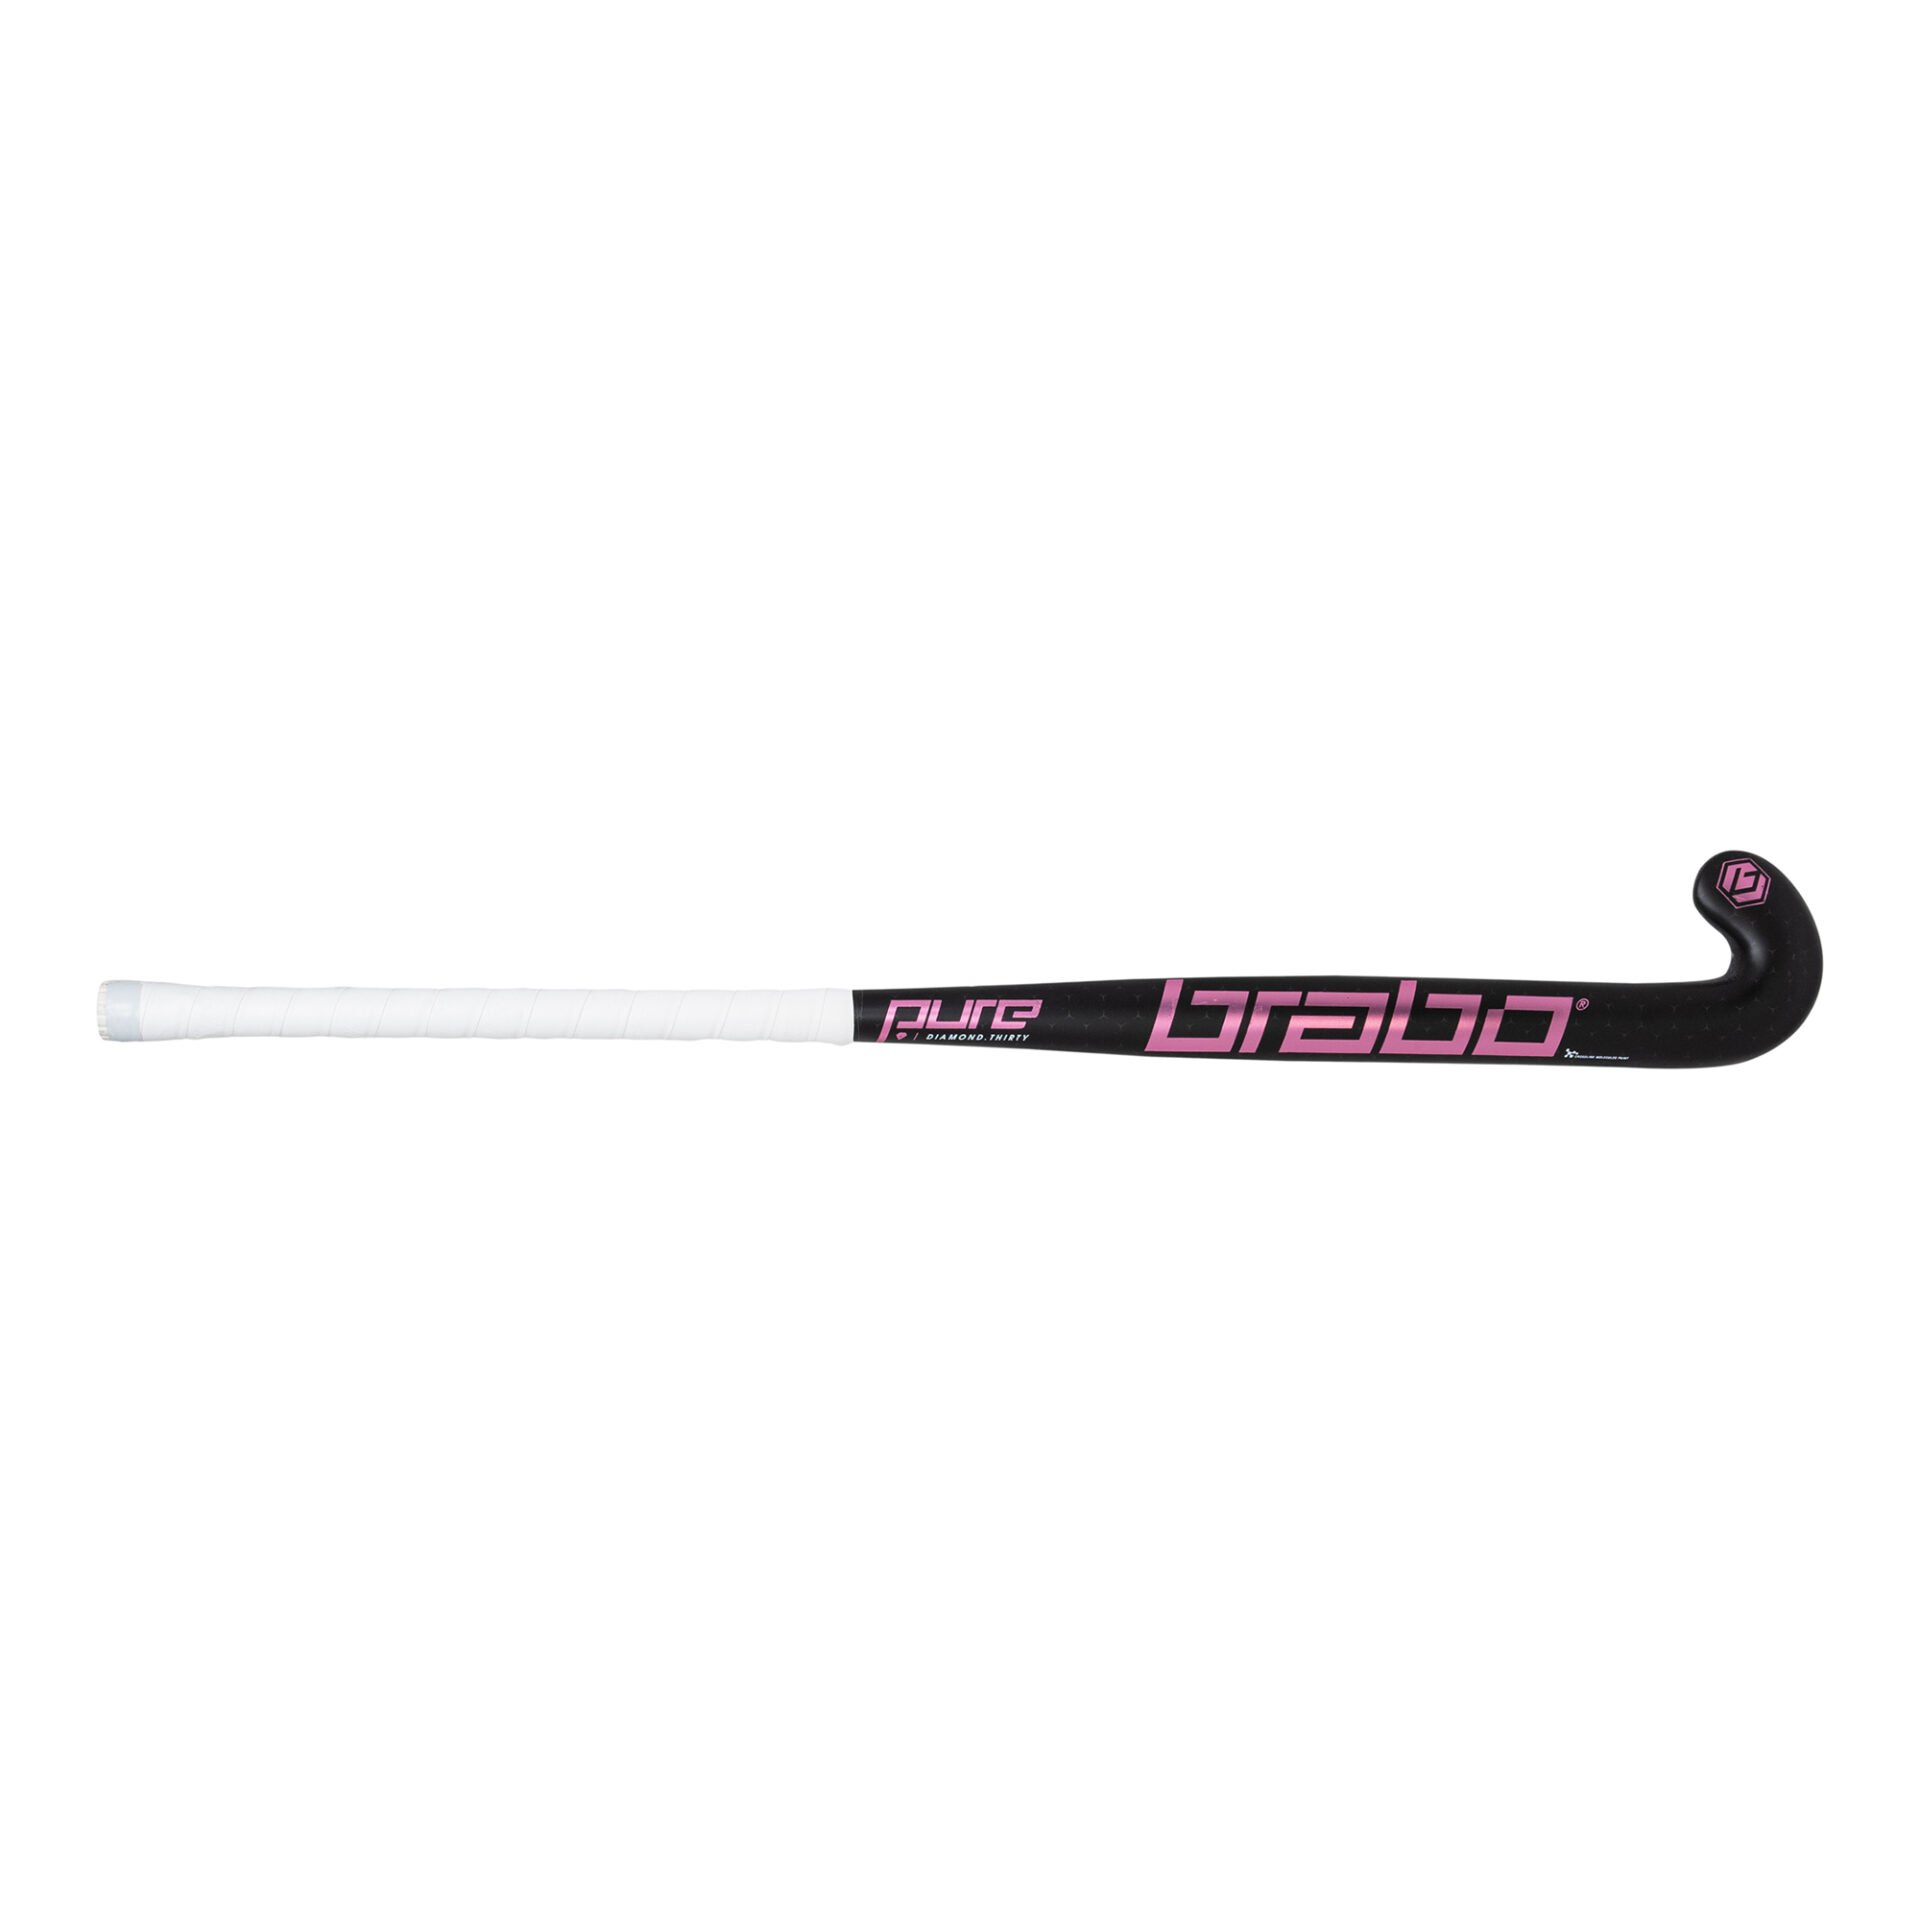 Hockey Stick Grip - Diamond